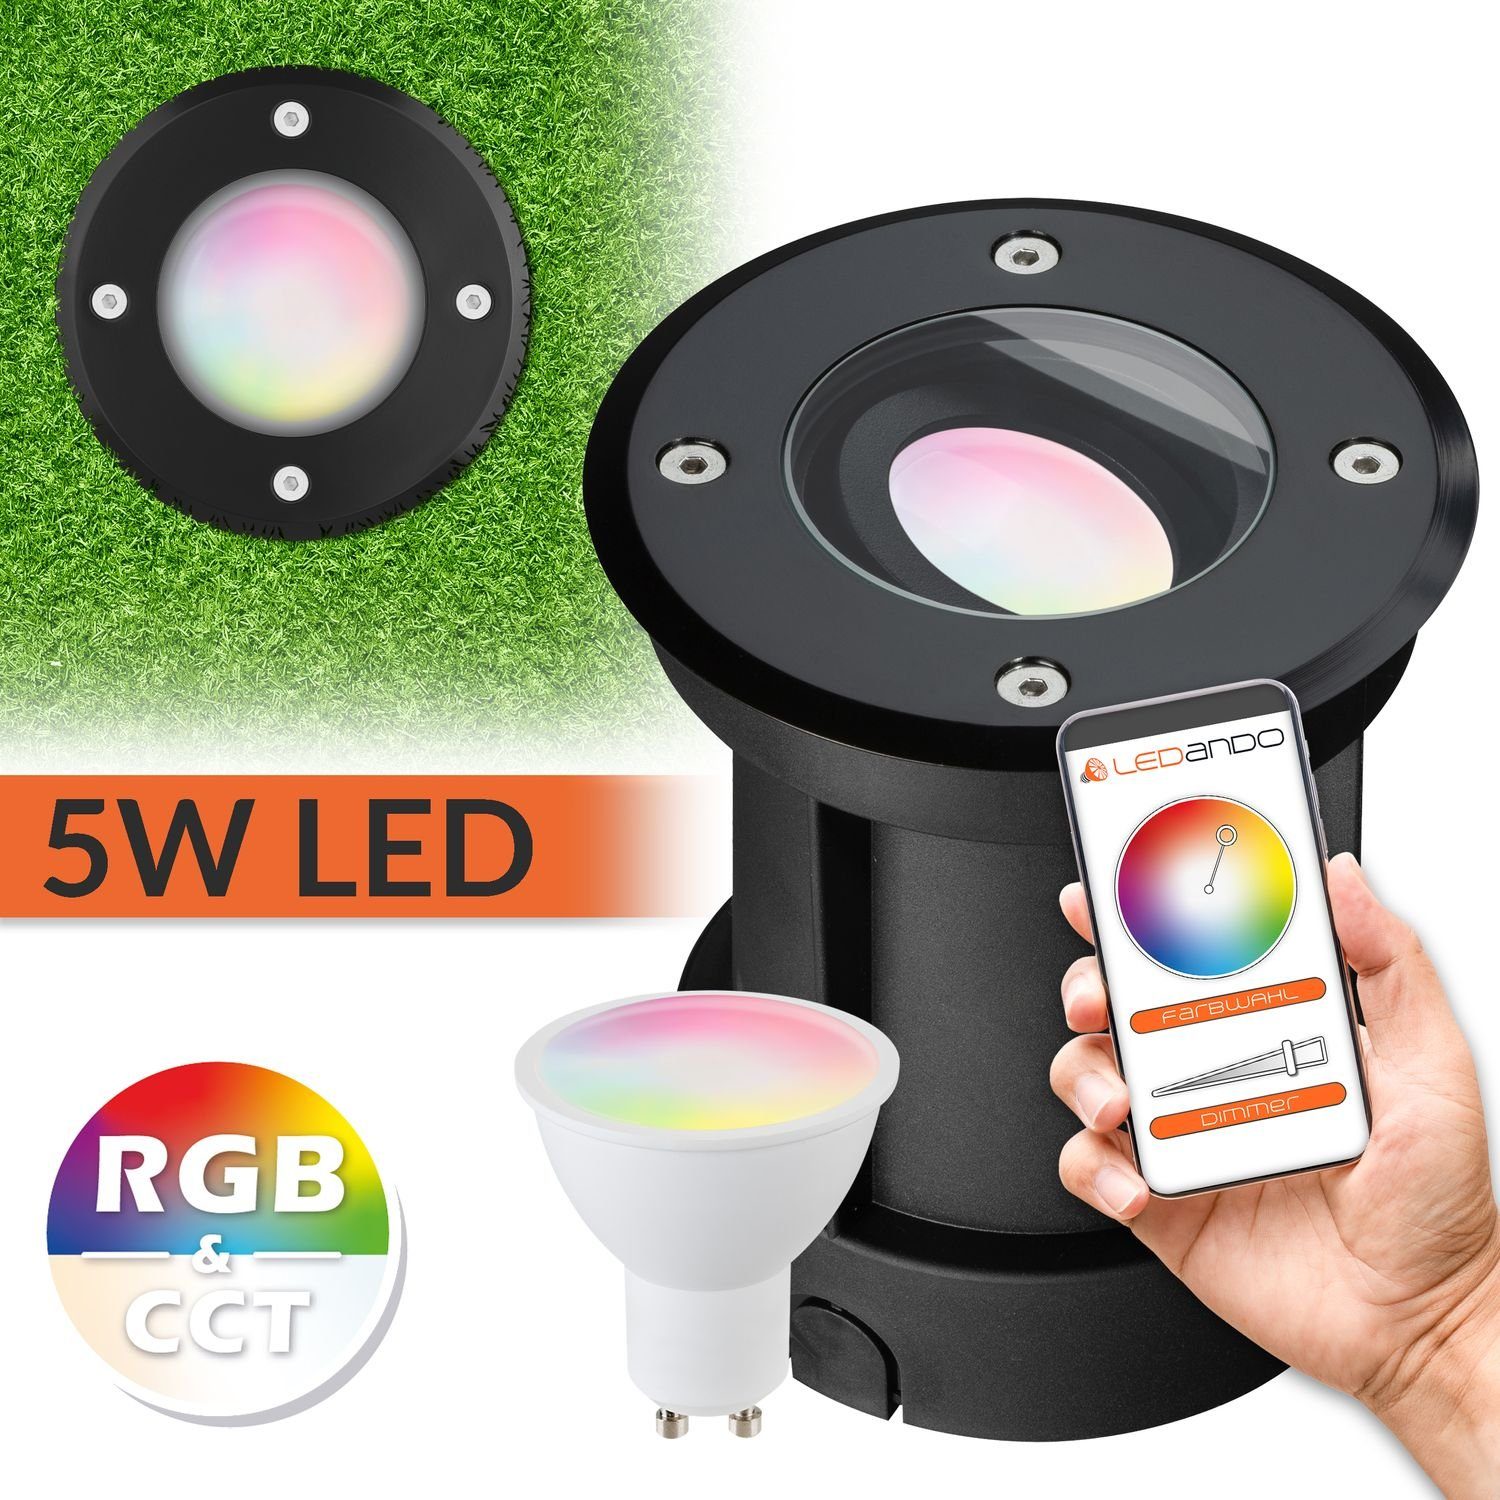 LEDANDO LED Einbaustrahler 5W WiFi LED Bodeneinbaustrahler Set - Smart per App steuerbar - RGB + | Strahler